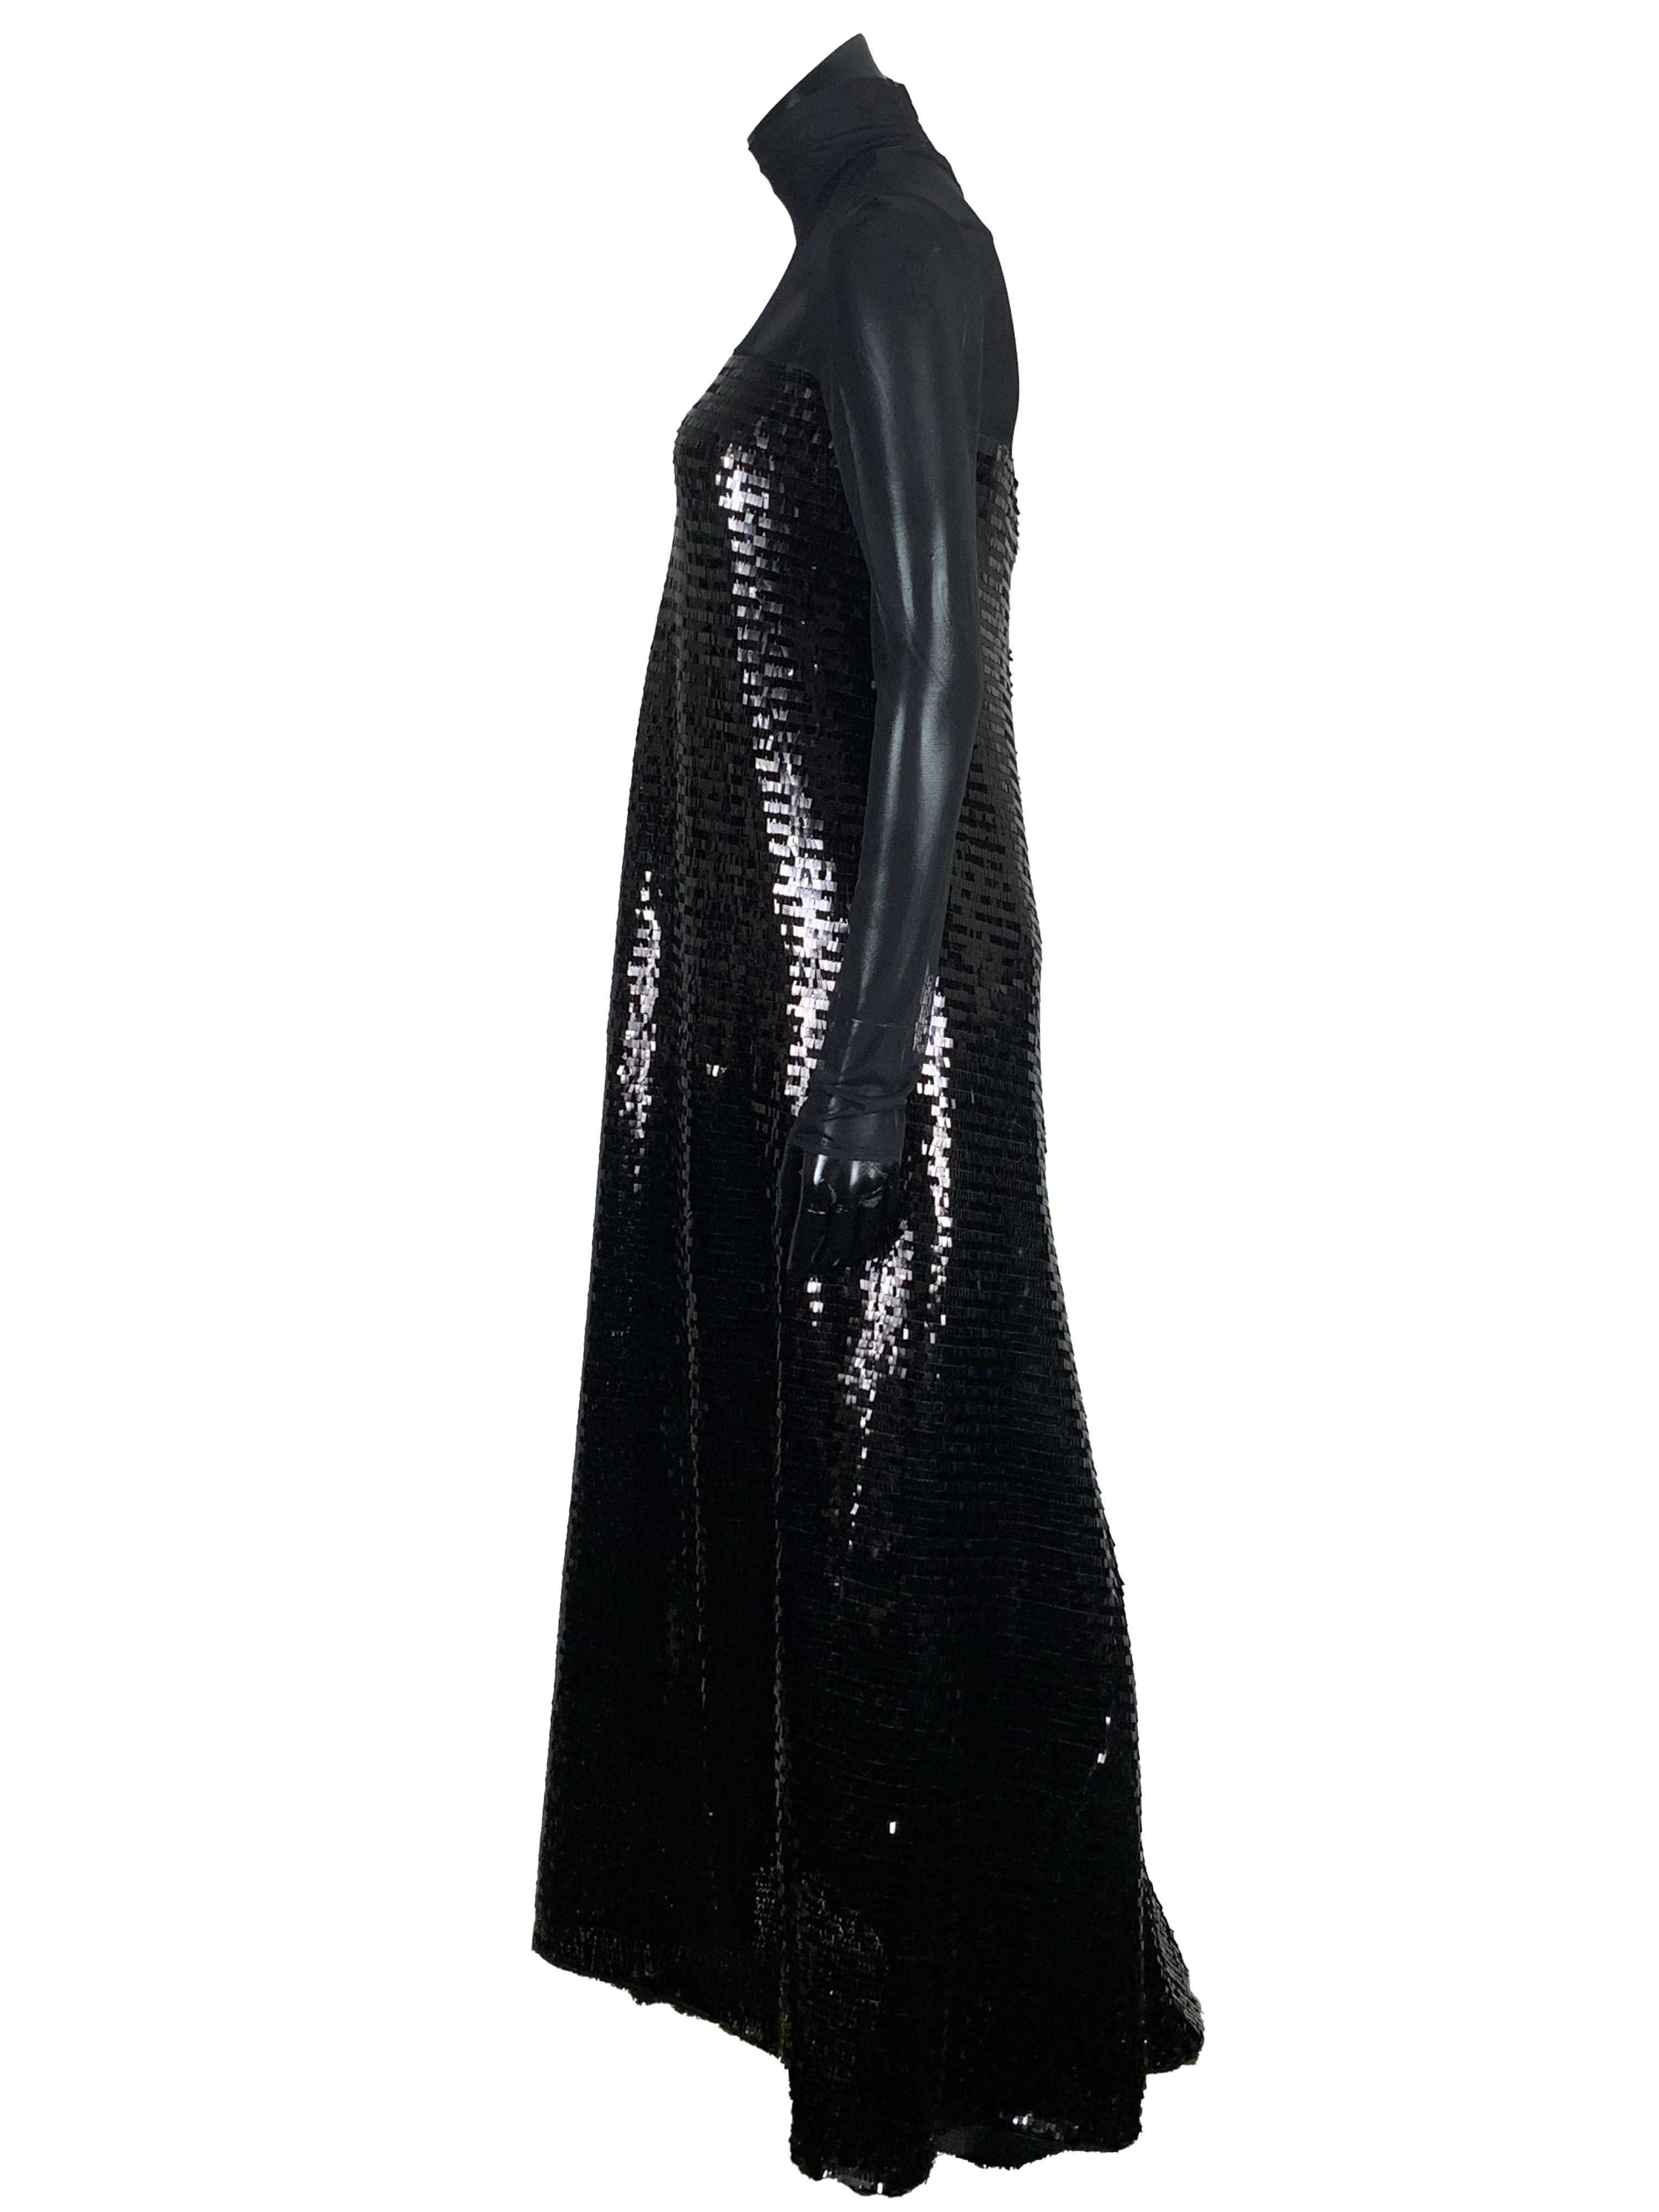 MAXI DRESS IN SQUARED BLACK SEQUINS - MESH SHOULDERS - Denis Gagnon -  Vêtements pour femmes et Mobilier Vintage - Montréal